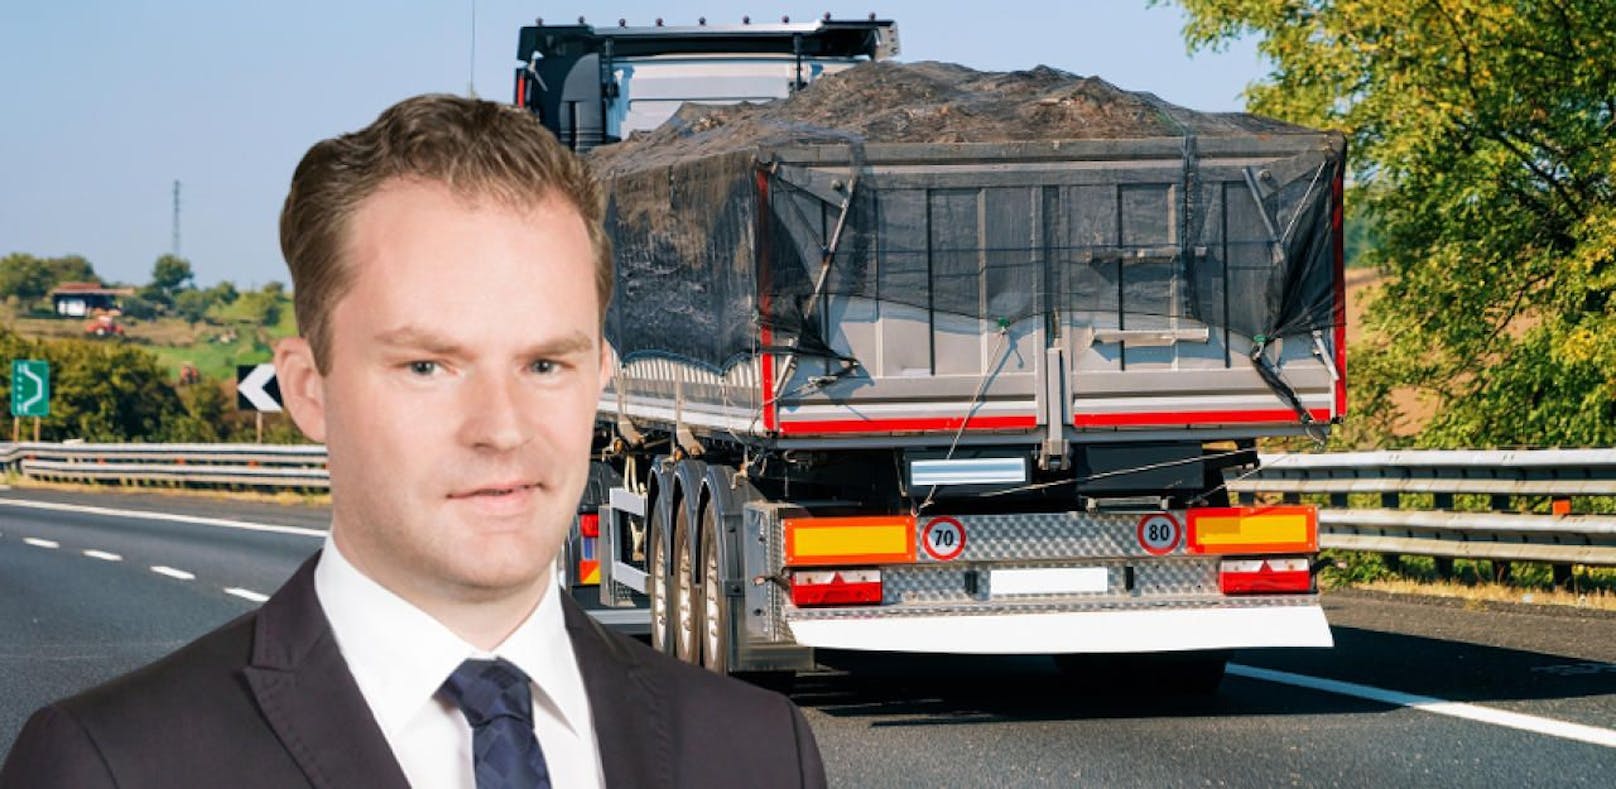 FPÖ kritisiert Mülltransport von Italien nach NÖ